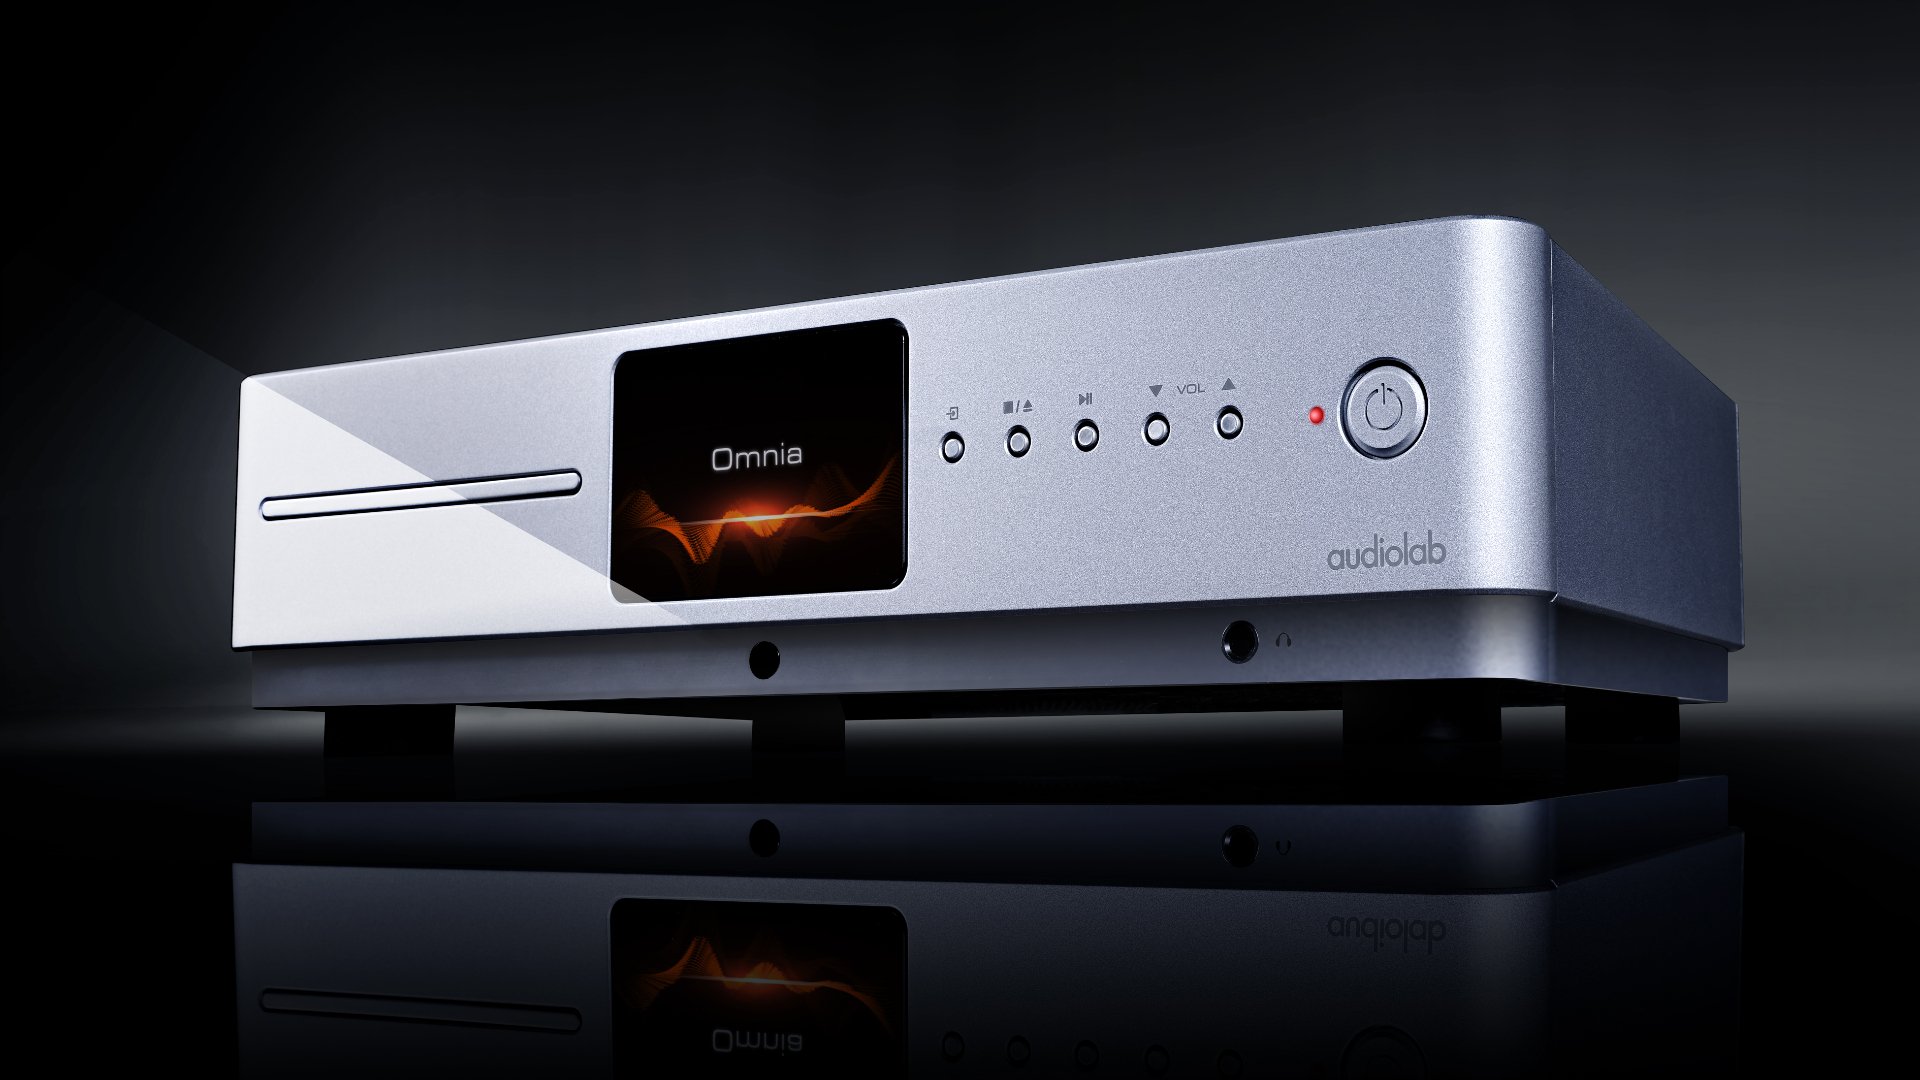 Audiolab Omnia: amplifier tích hợp đầy đủ, cắm thêm loa là nghe nhạc được ngay, giá $2.199